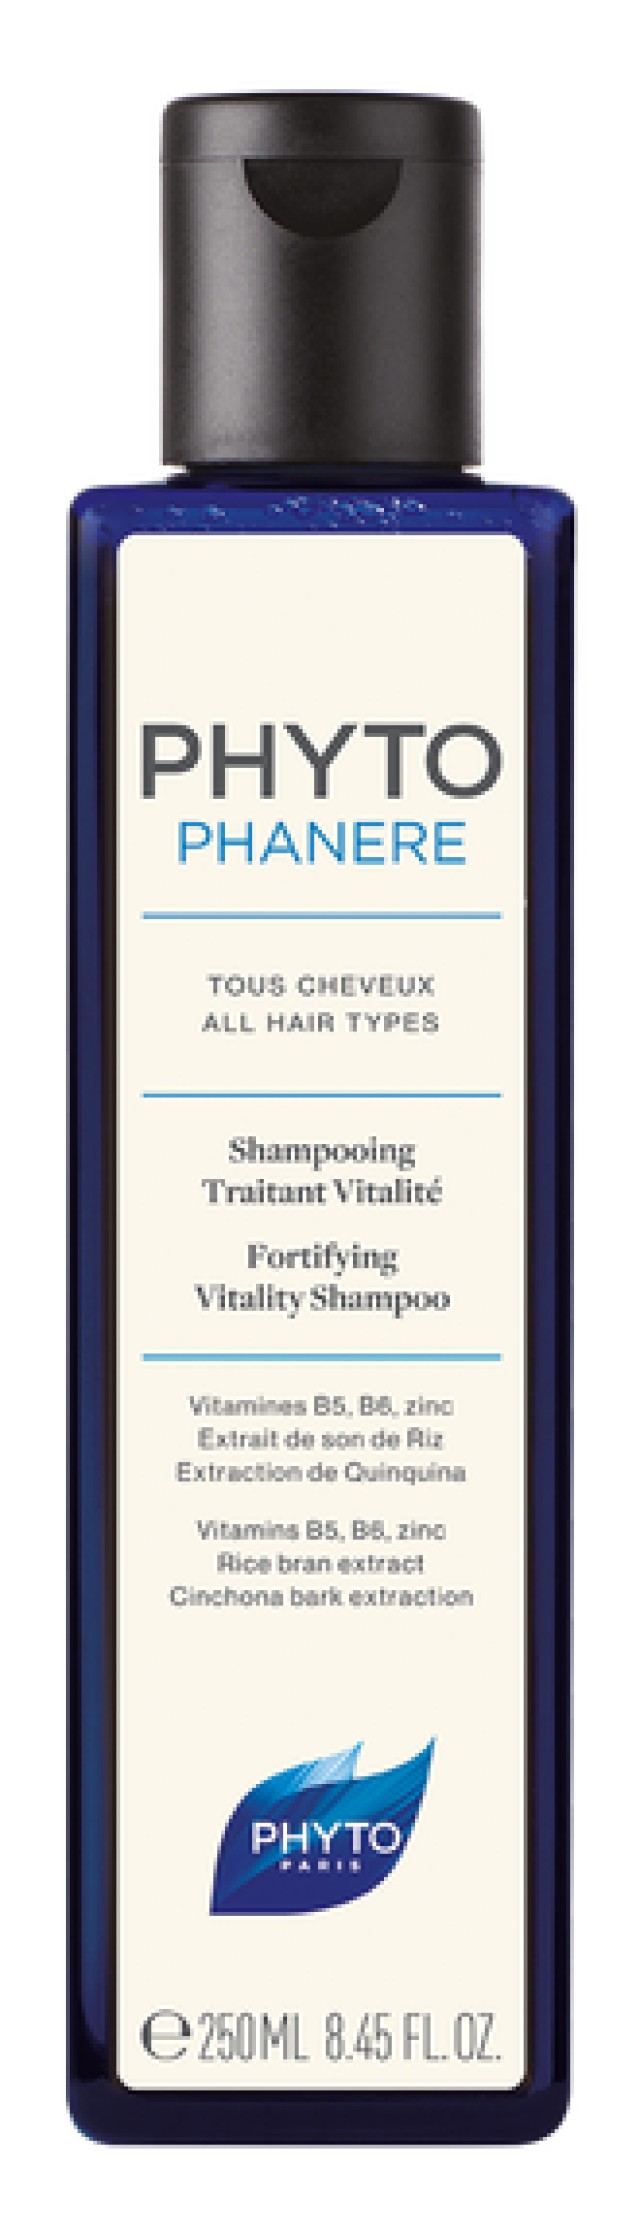 Phyto Phytophanere Shampoo Δυναμωτικό και Αναζωογονητικό Σαμπουάν 250ml